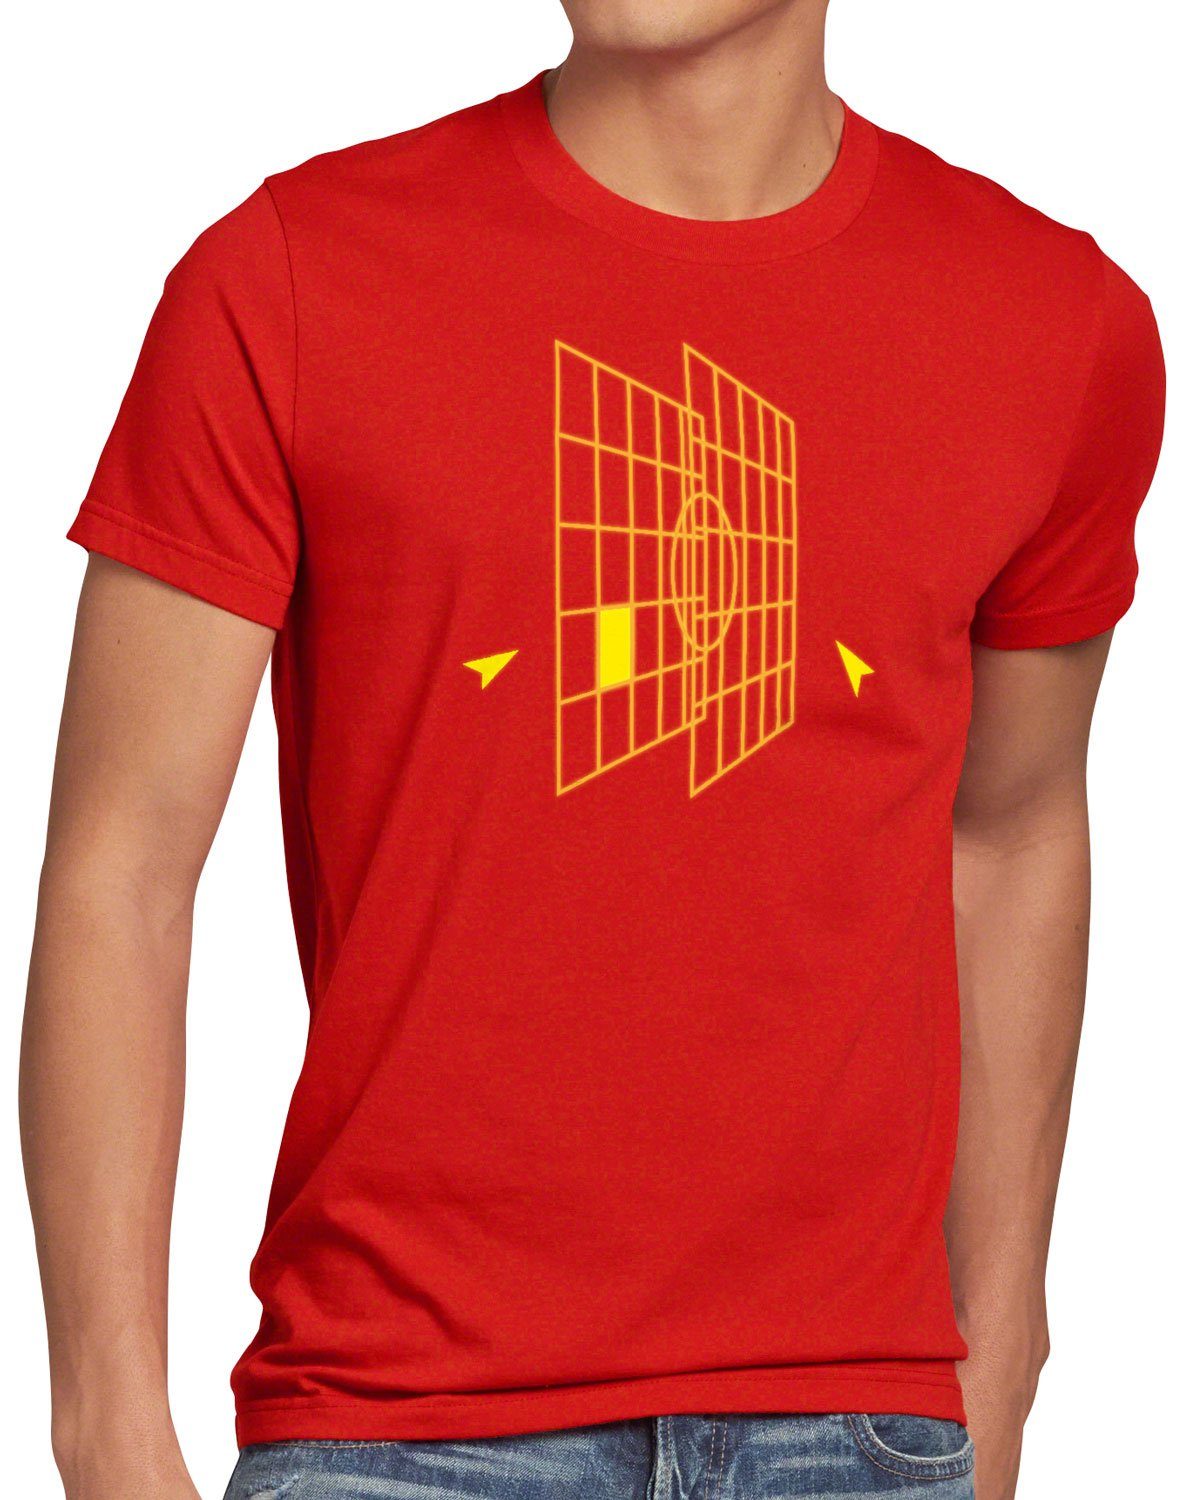 [Sehr beliebtes Standardprodukt] style3 Print-Shirt Herren T-Shirt falkon chewie Millennium Falcon Interface